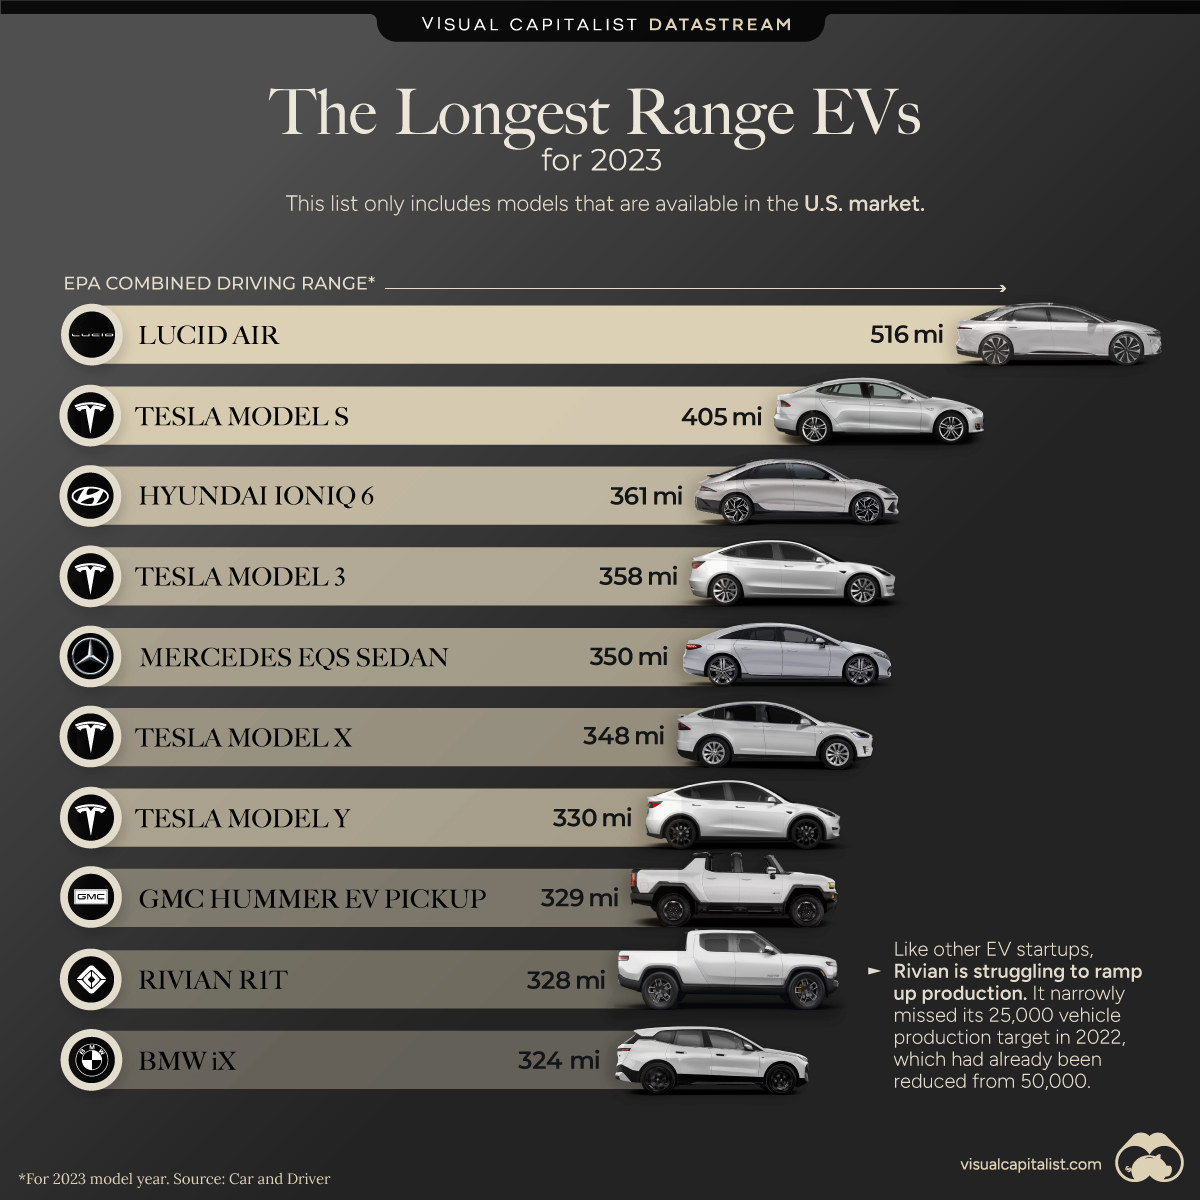 The 10 Longest Range EVs for 2023